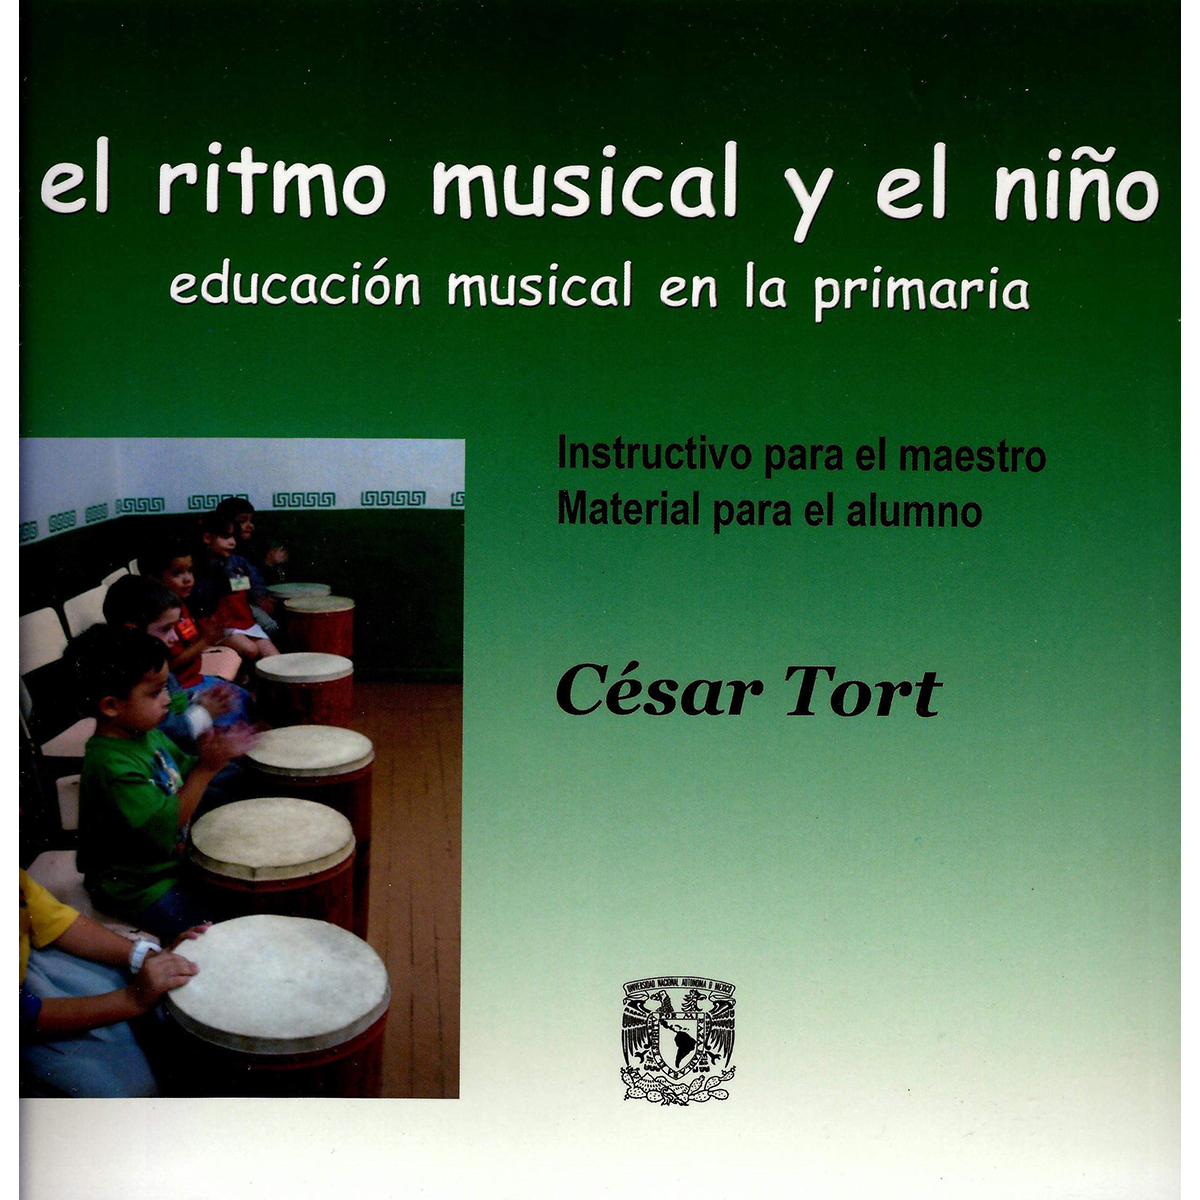 EL RITMO MUSICAL Y EL NIÑO. EDUCACIÓN MUSICAL EN LA PRIMARIA INSTRUCTIVO PARA EL MAESTRO. MATERIAL PARA EL ALUMNO